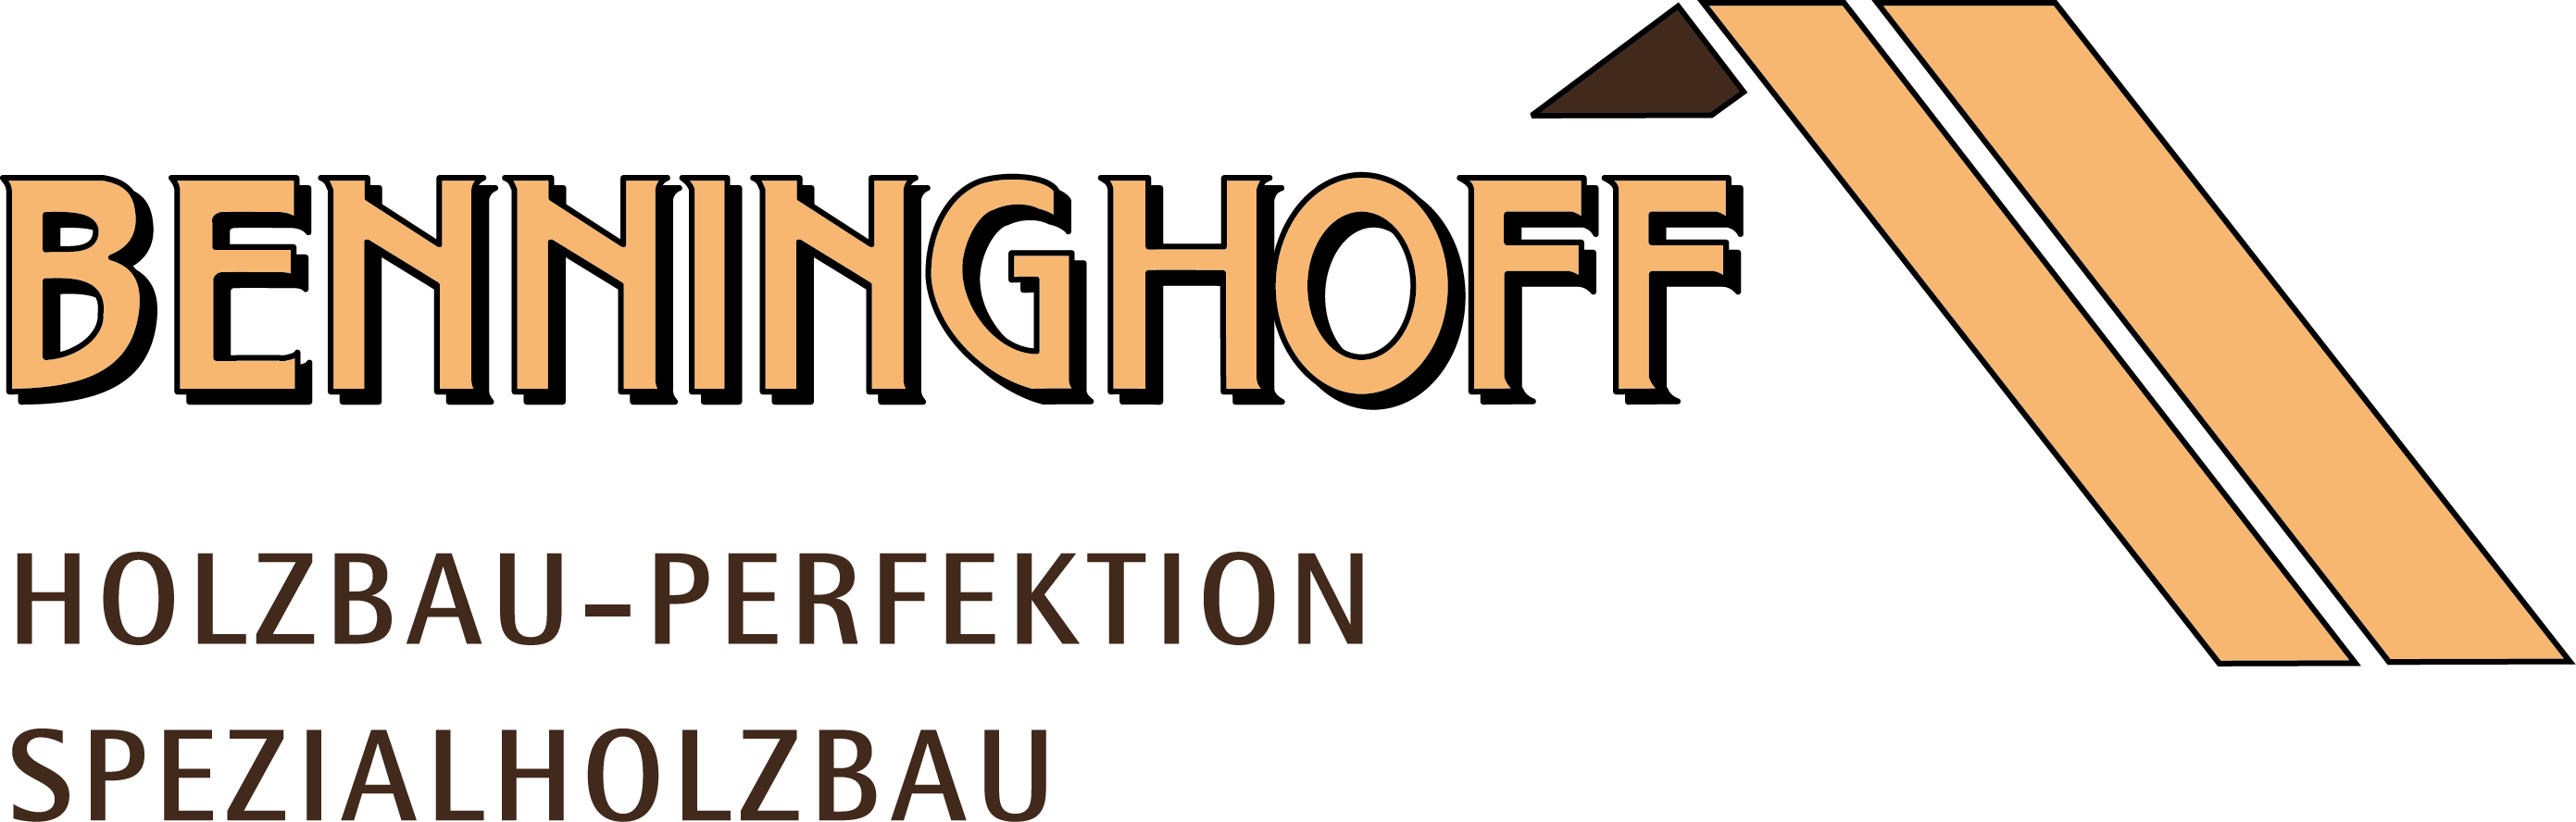 Benninghoff Holzbau GmbH & Co. KG